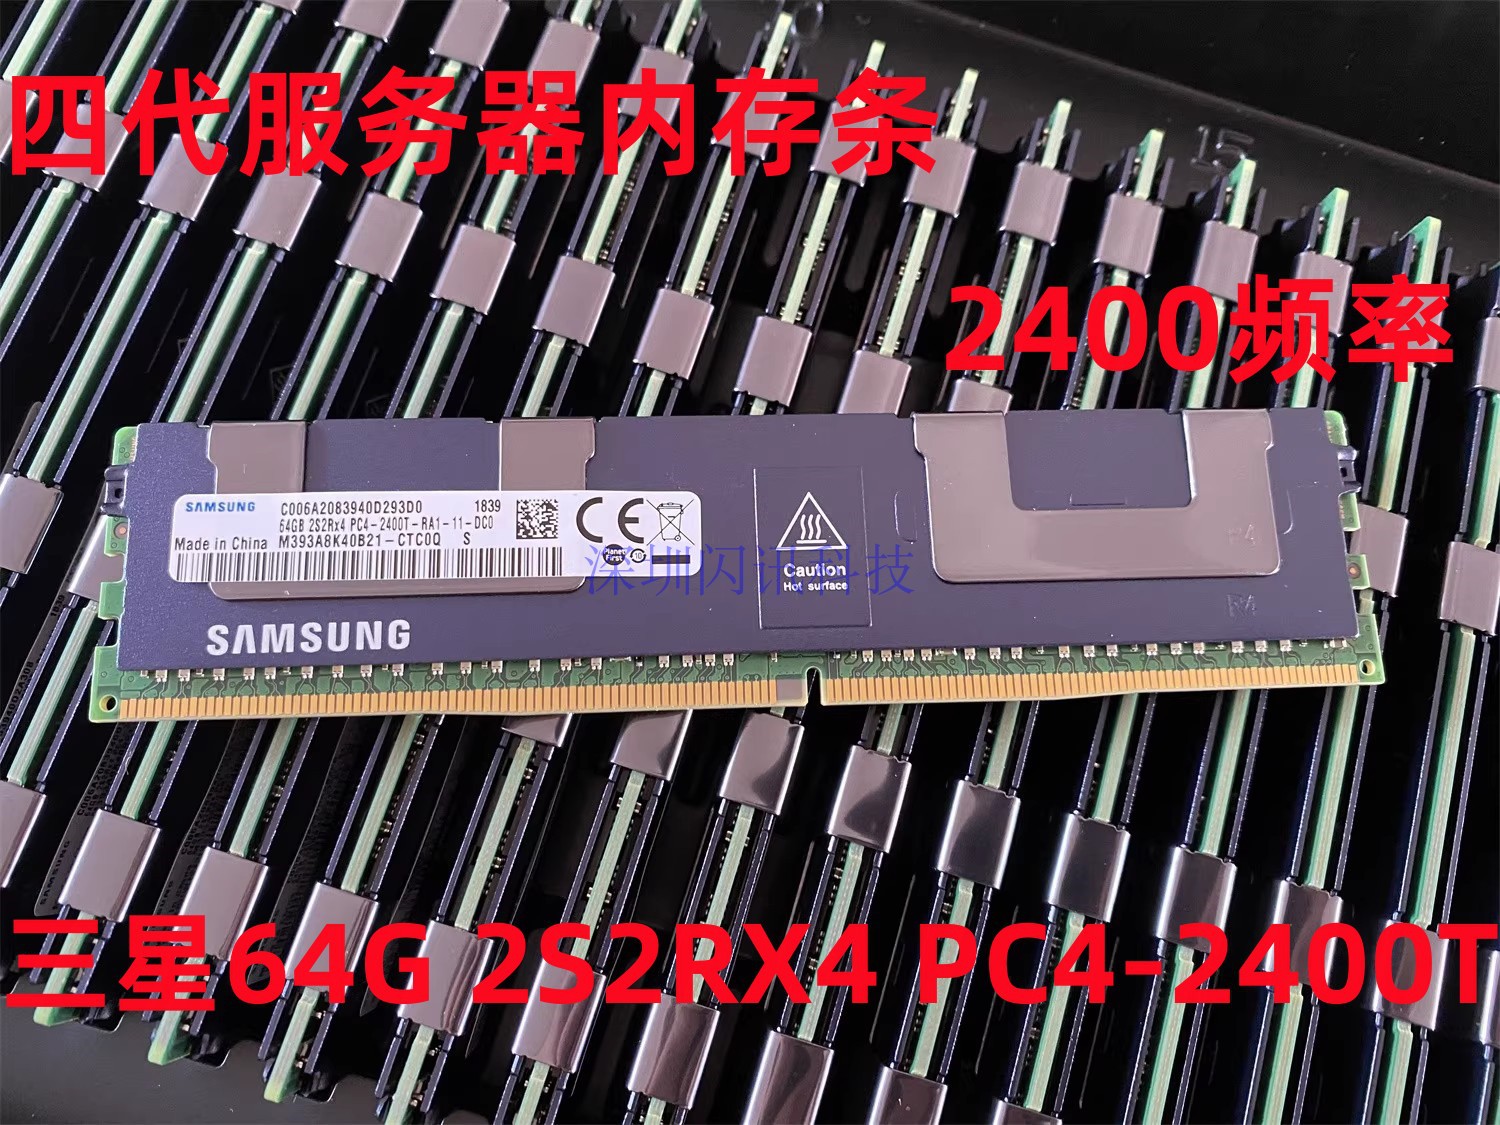 三星64G 2S2RX4 PC4-2400T服务器内存64G DDR4 2400 2666ECC REG-封面